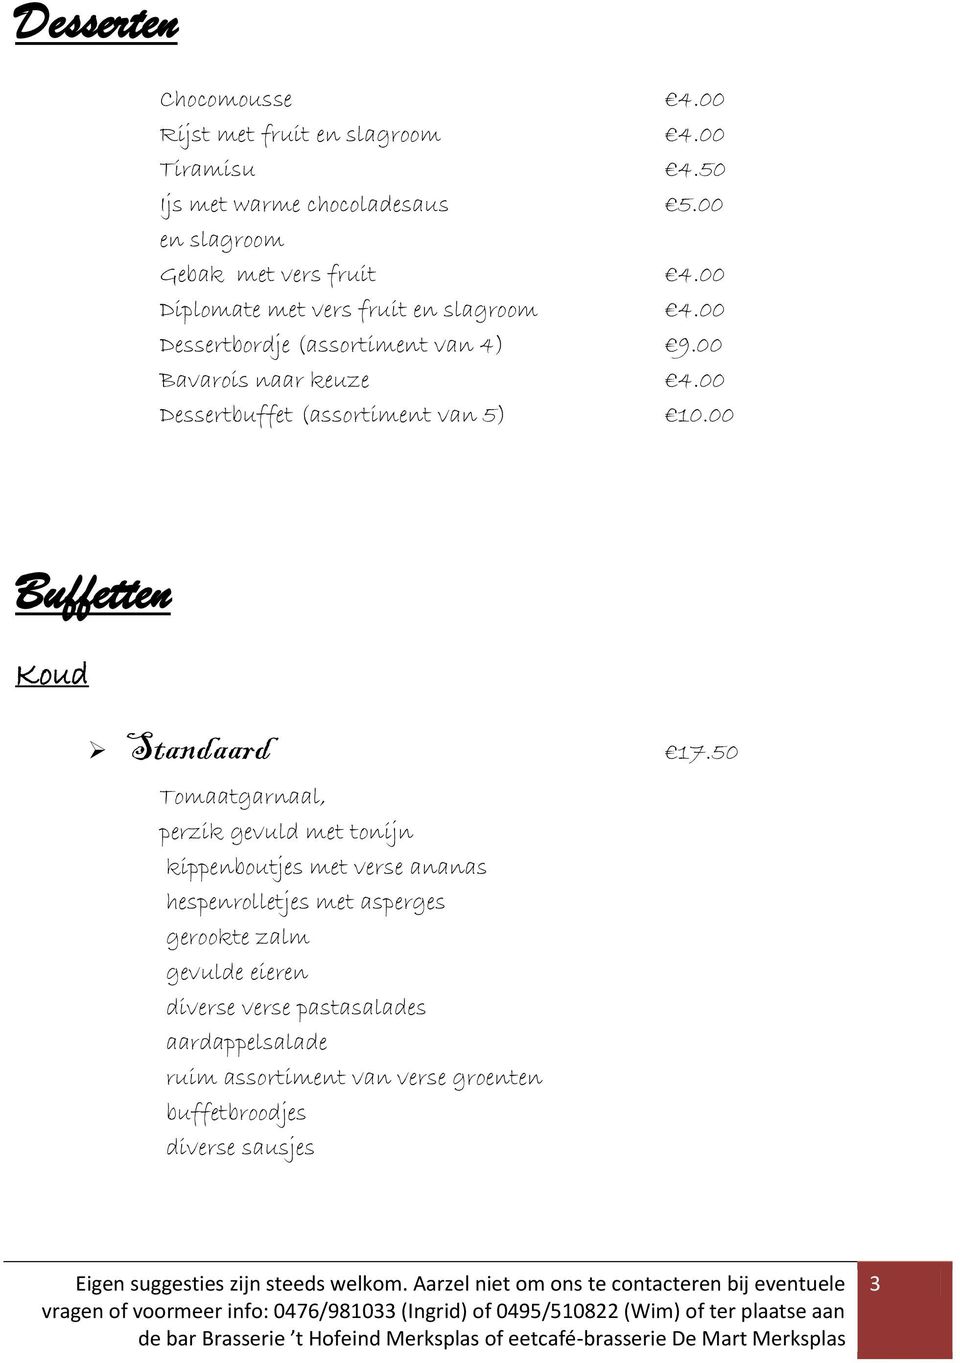 00 Bavarois naar keuze 4.00 Dessertbuffet (assortiment van 5) 10.00 Buffetten Koud Standaard 17.